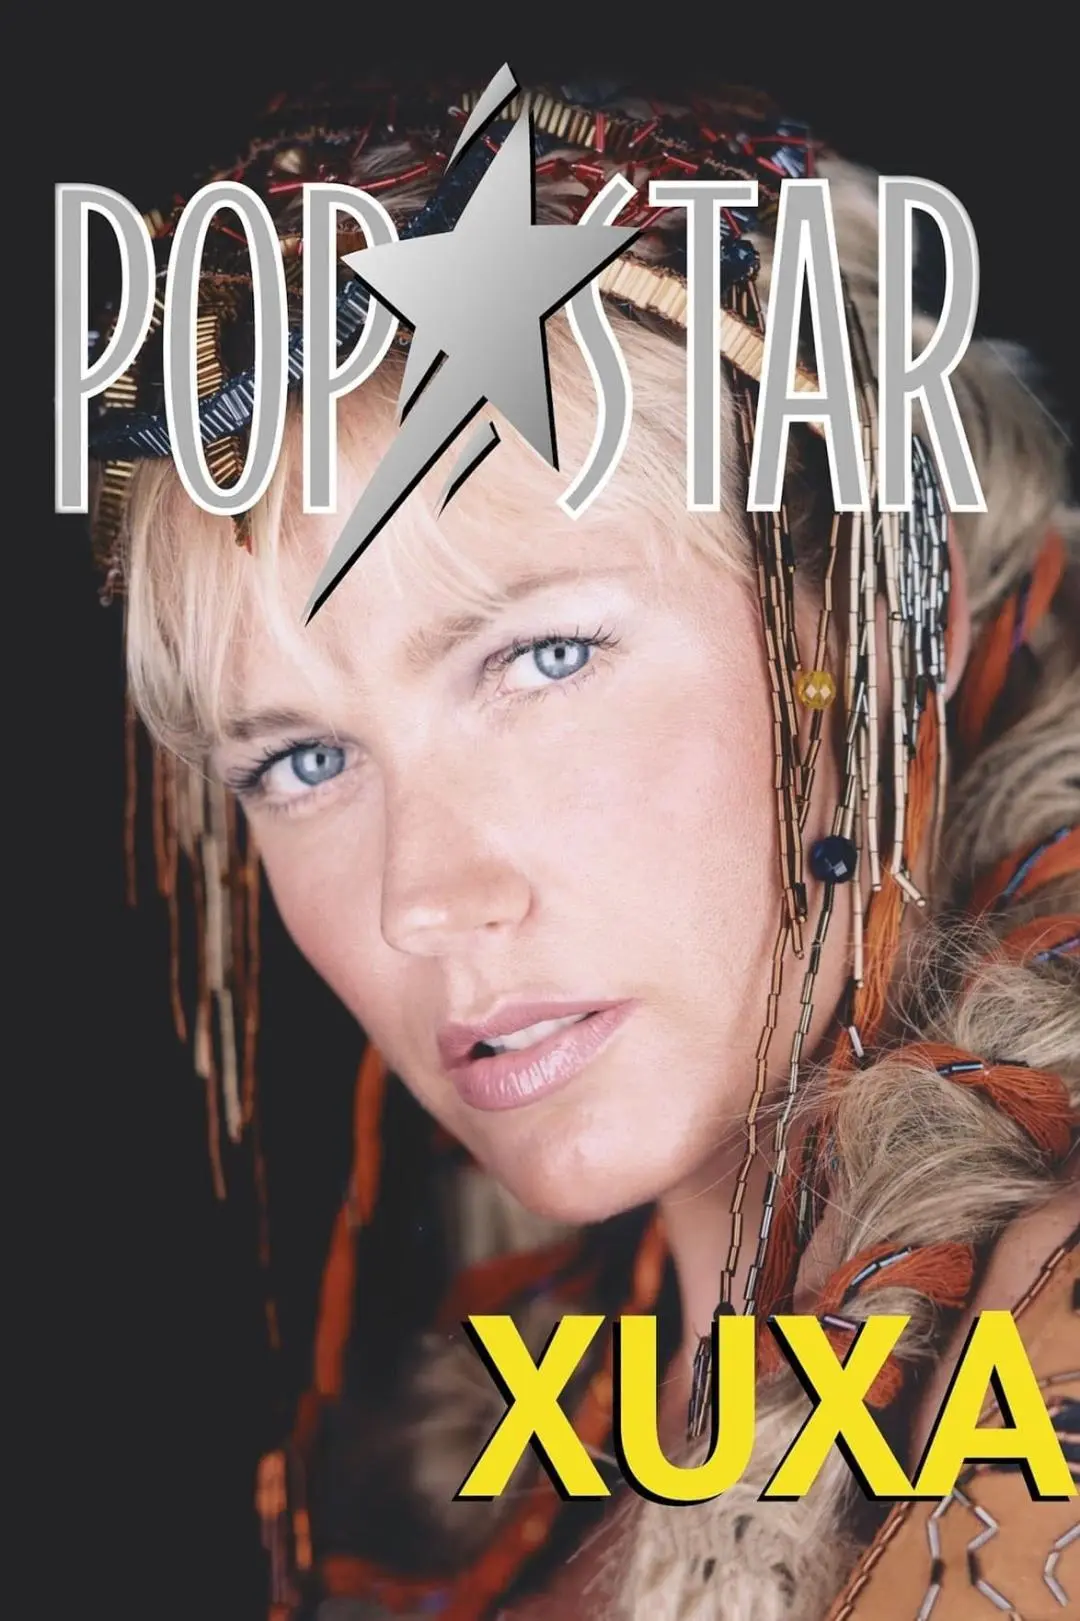 Xuxa Popstar_peliplat